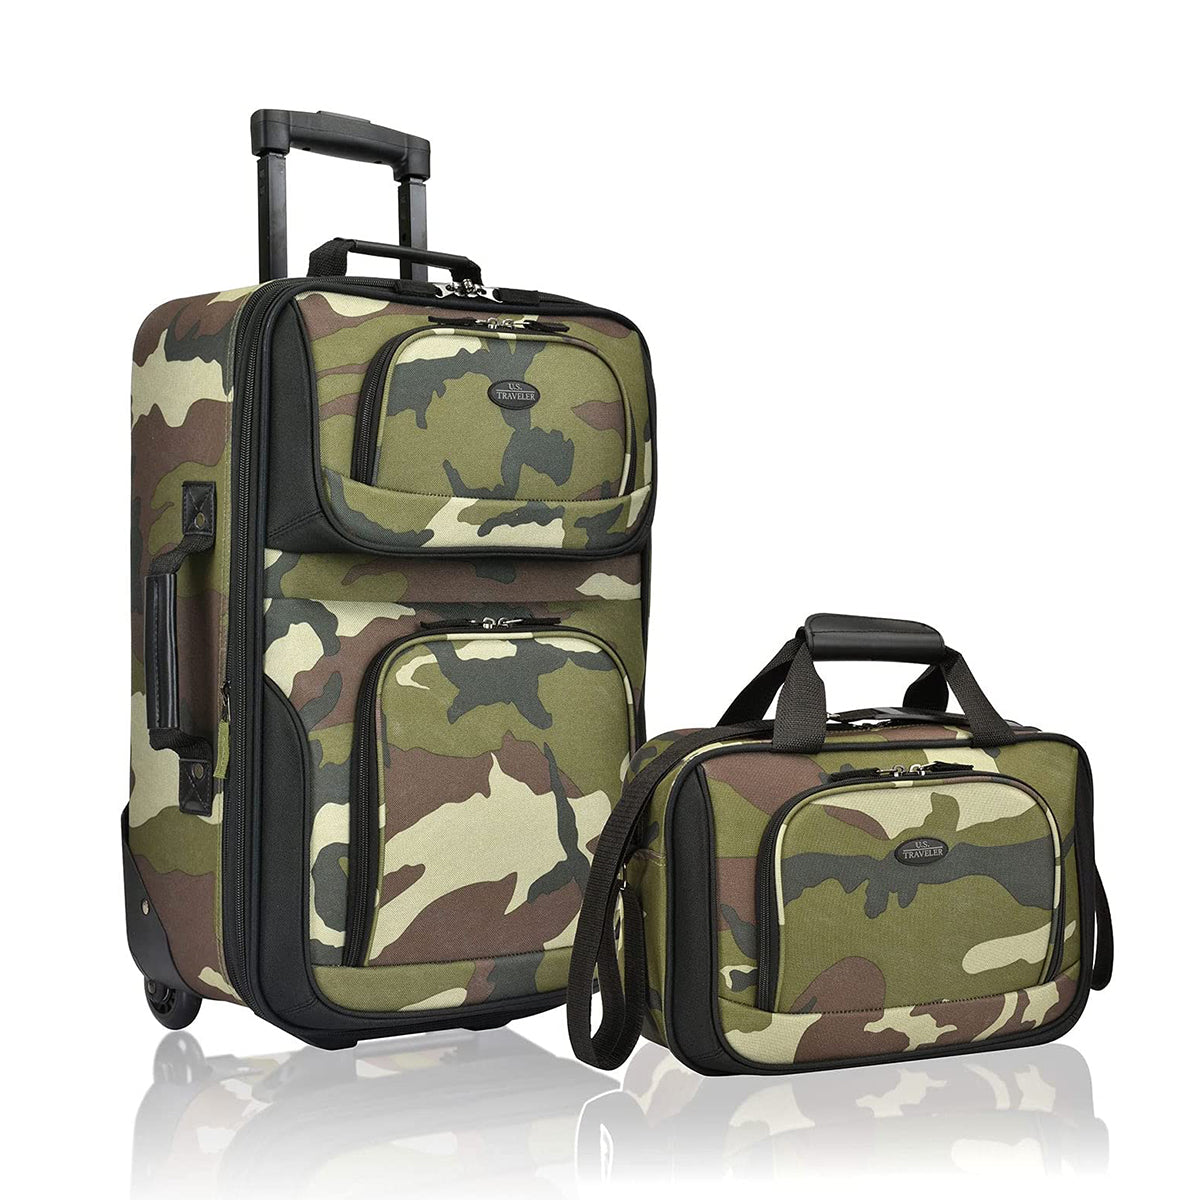 U.S. Traveler Rio Rugged Fabric Expandable Carry-on Luggage Set, 2 Wheel 